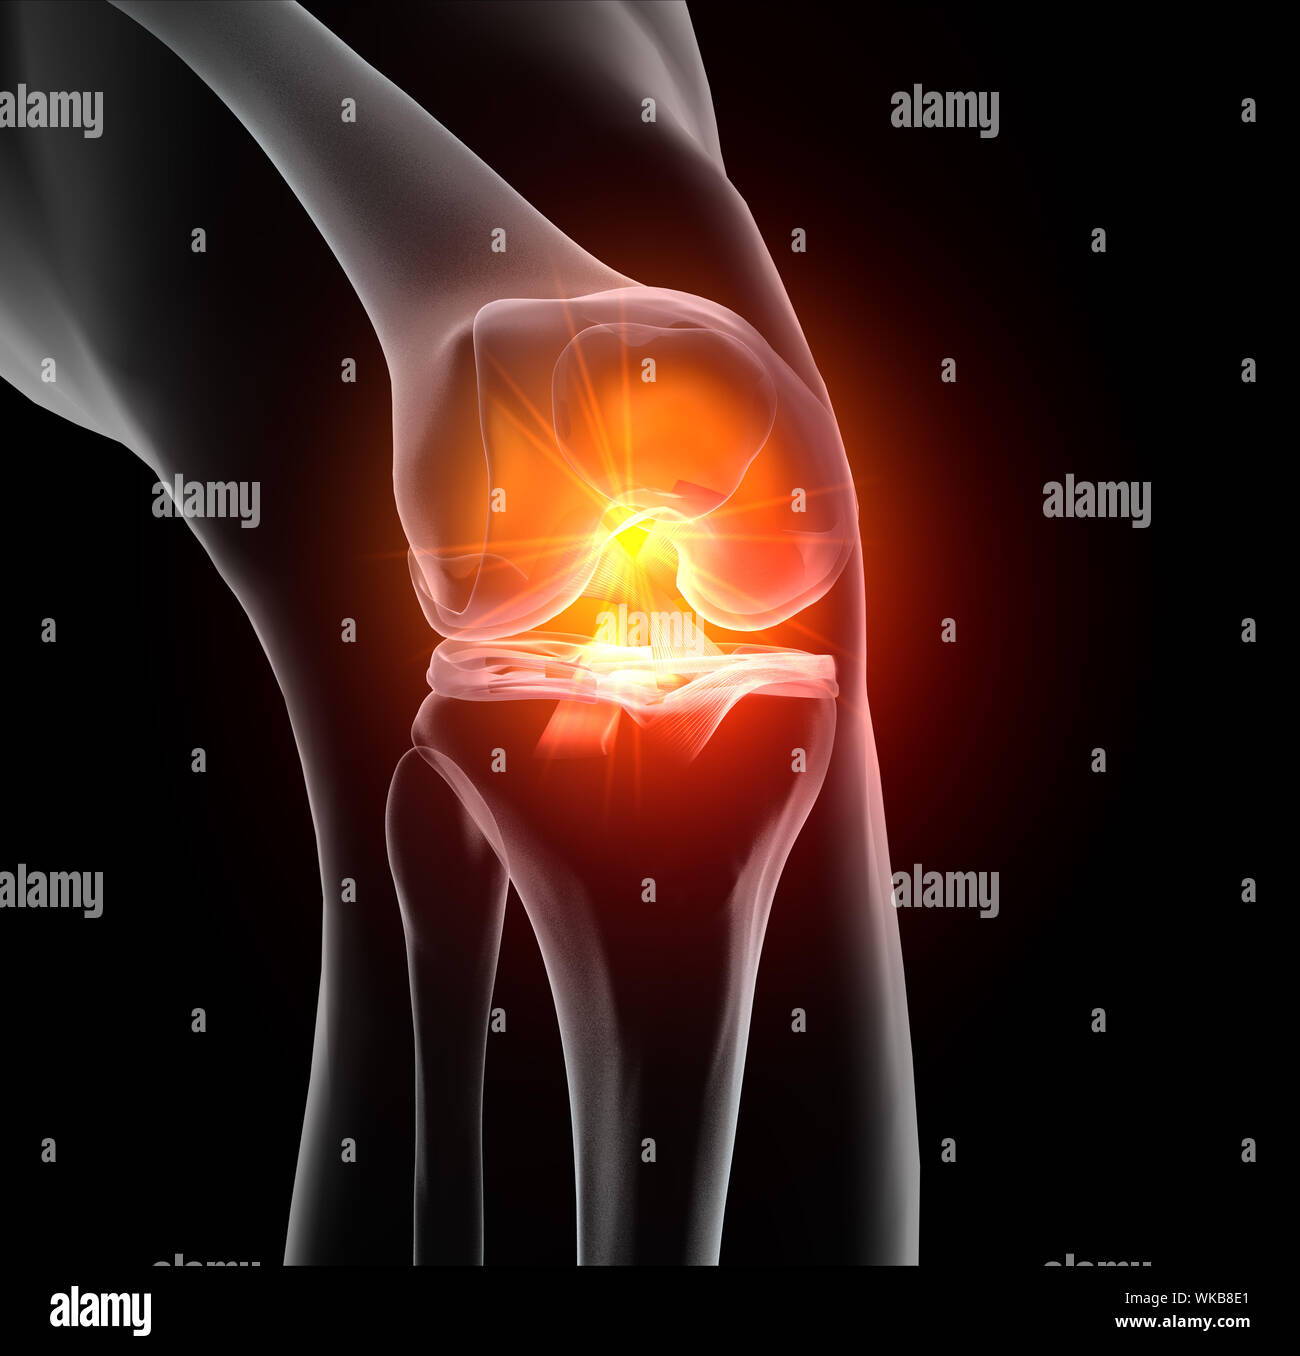 Médicalement précis 3D illustration montrant l'articulation du genou douloureux avec mis en évidence du ligament croisé antérieur et postérieur, ménisque, cartilage articulaire Banque D'Images